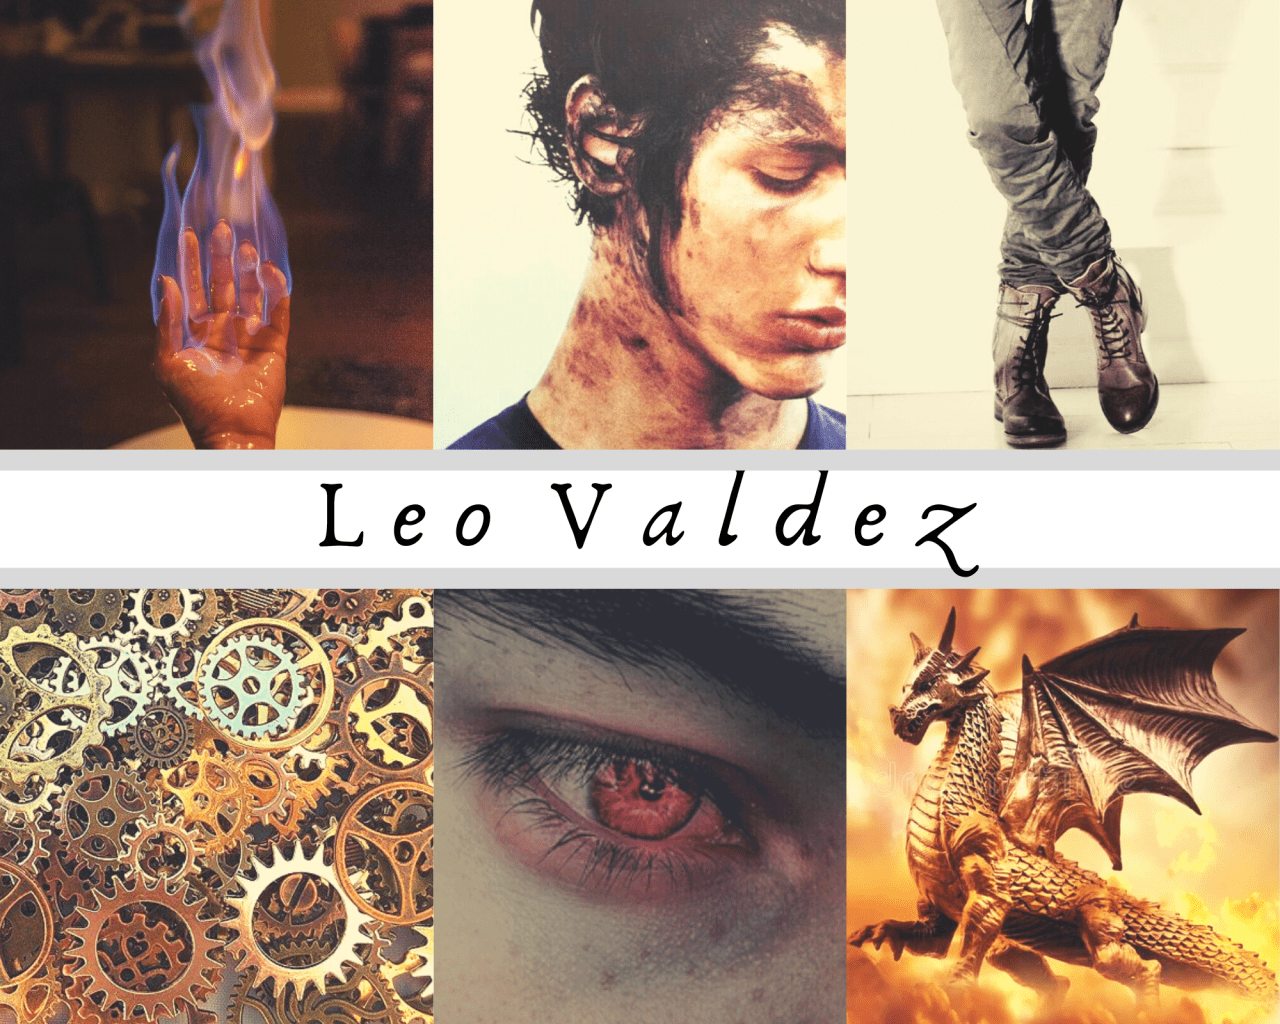 Leo Valdez & Calypso 》 in general